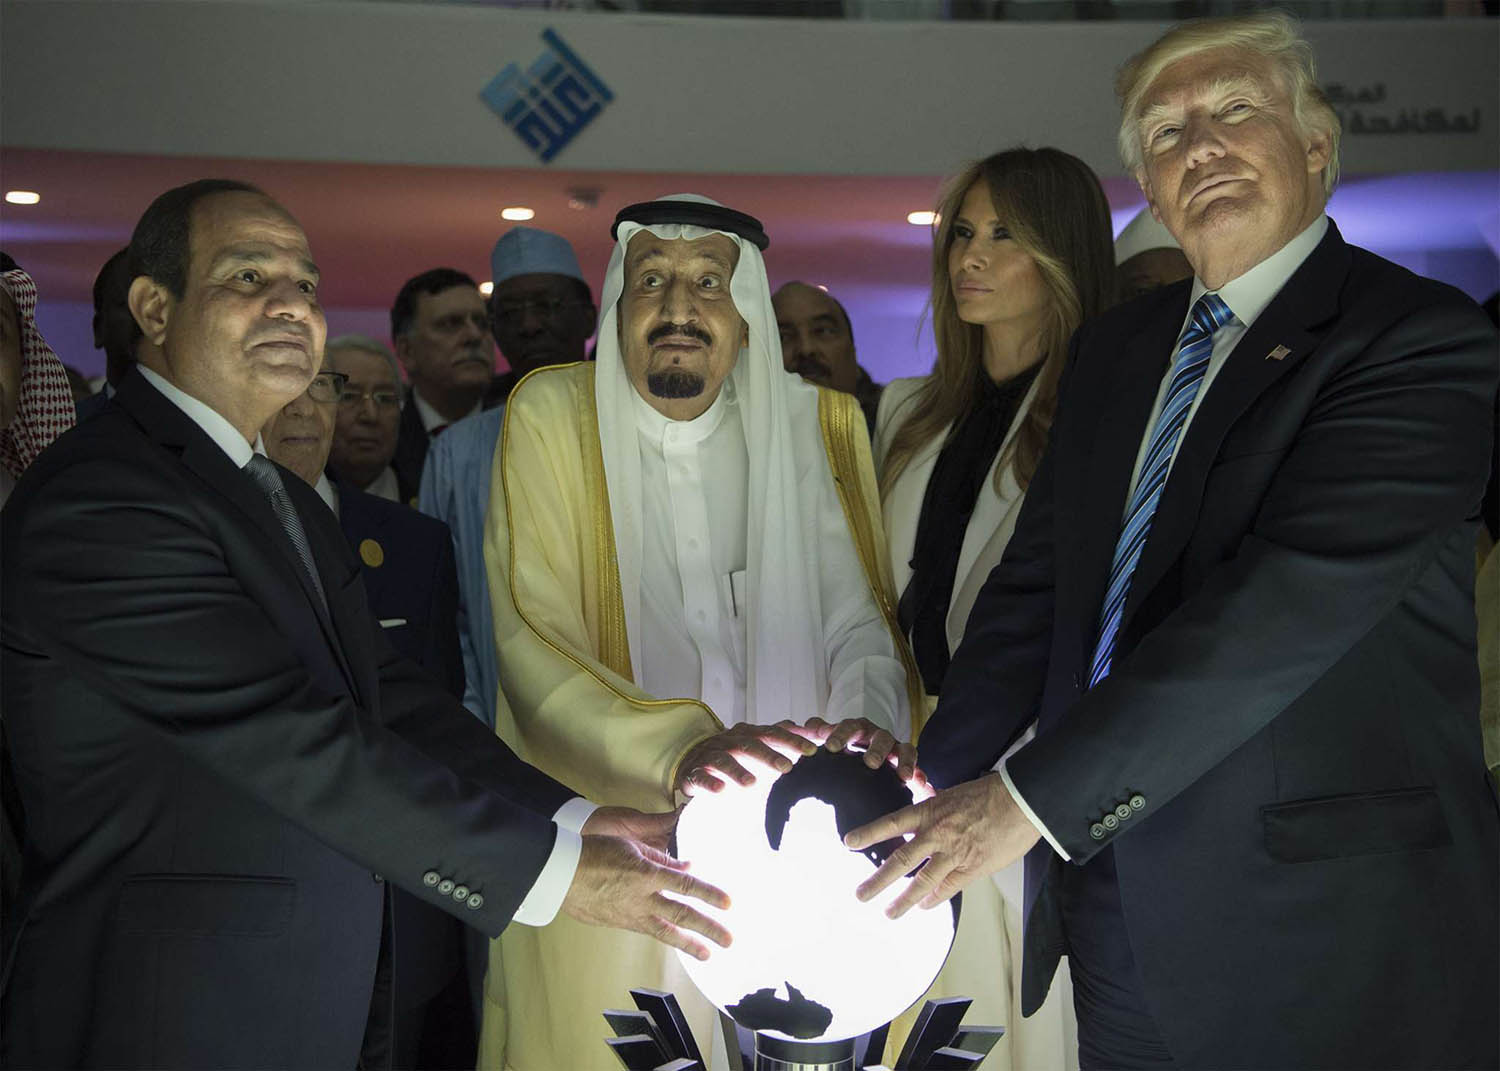 العاهل السعودي سلمان بن عبدالعزيز والرئيس الأميركي دونالد ترامب والرئيس المصري عبدالفتاح السيسي في اطلاق مركز "إعتدال" لمحاربة التطرف في الرياض عام 2017